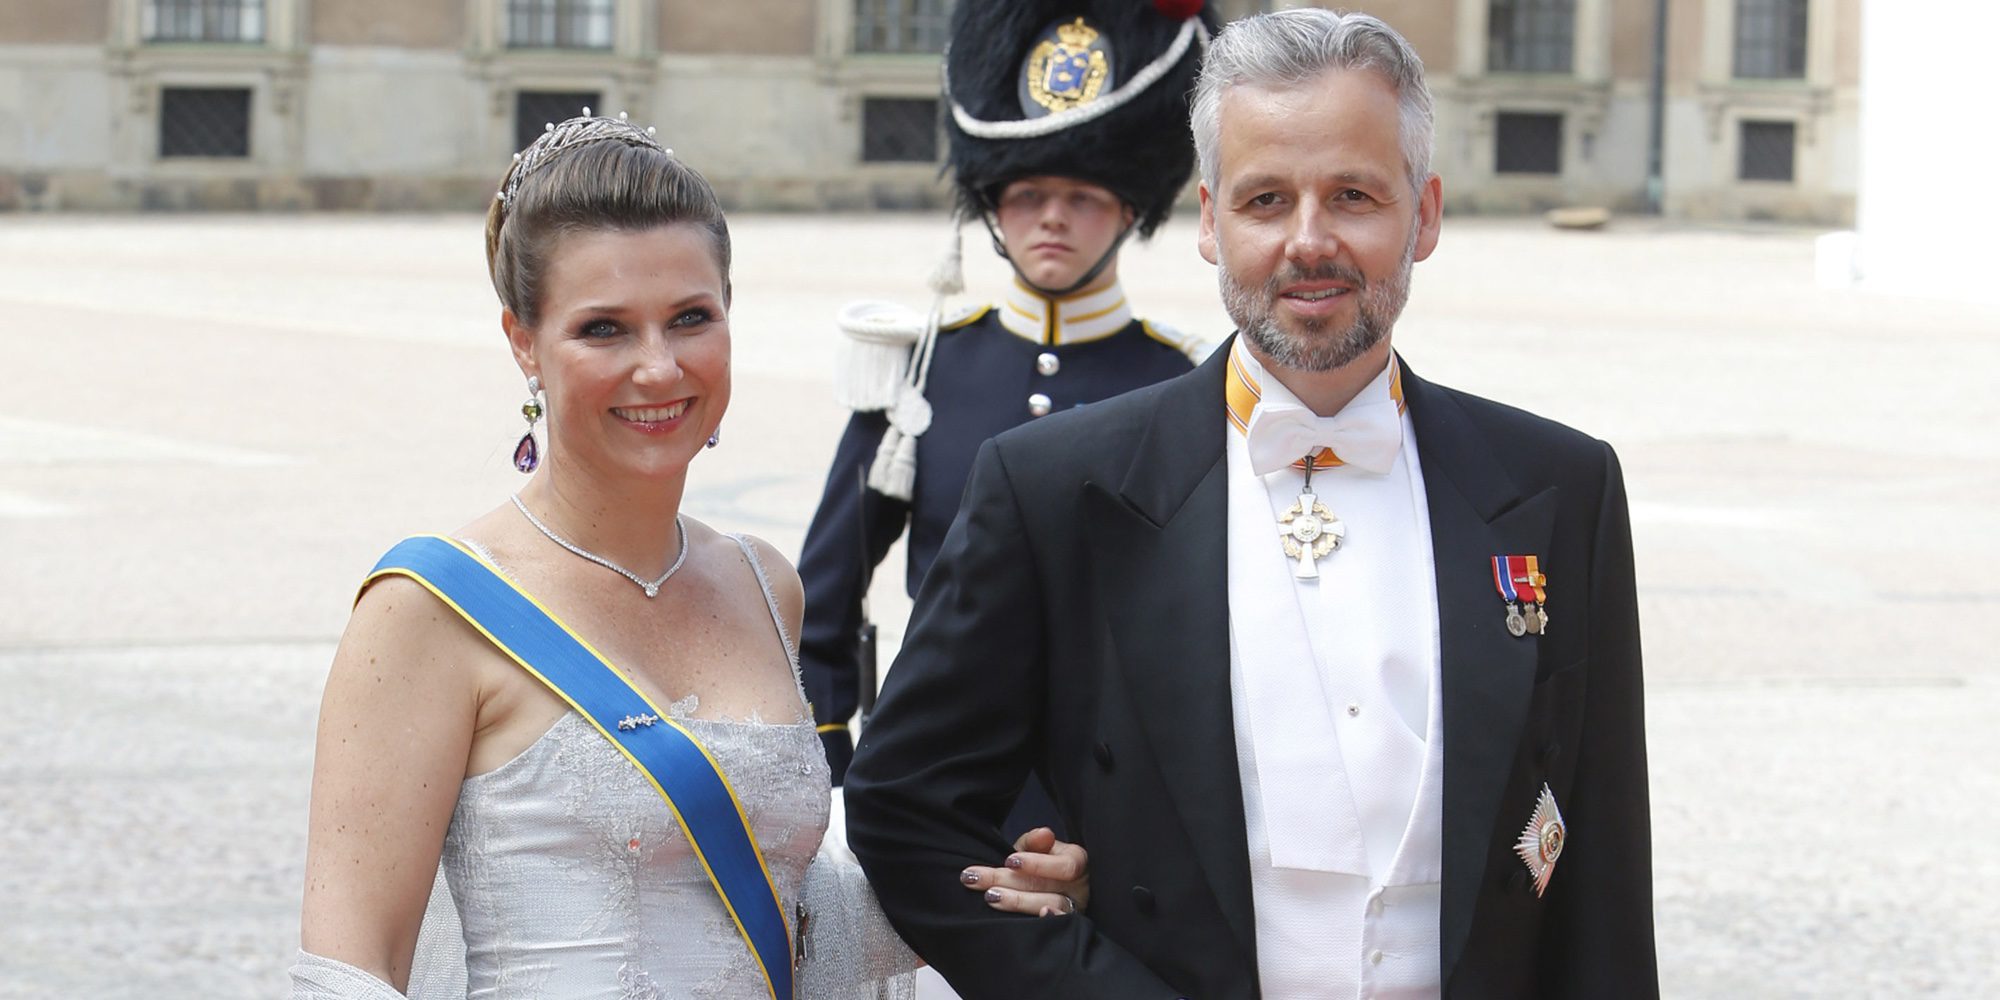 La Princesa Marta Luisa de Noruega y Ari Behn ponen fin a su matrimonio tras 14 años de casados